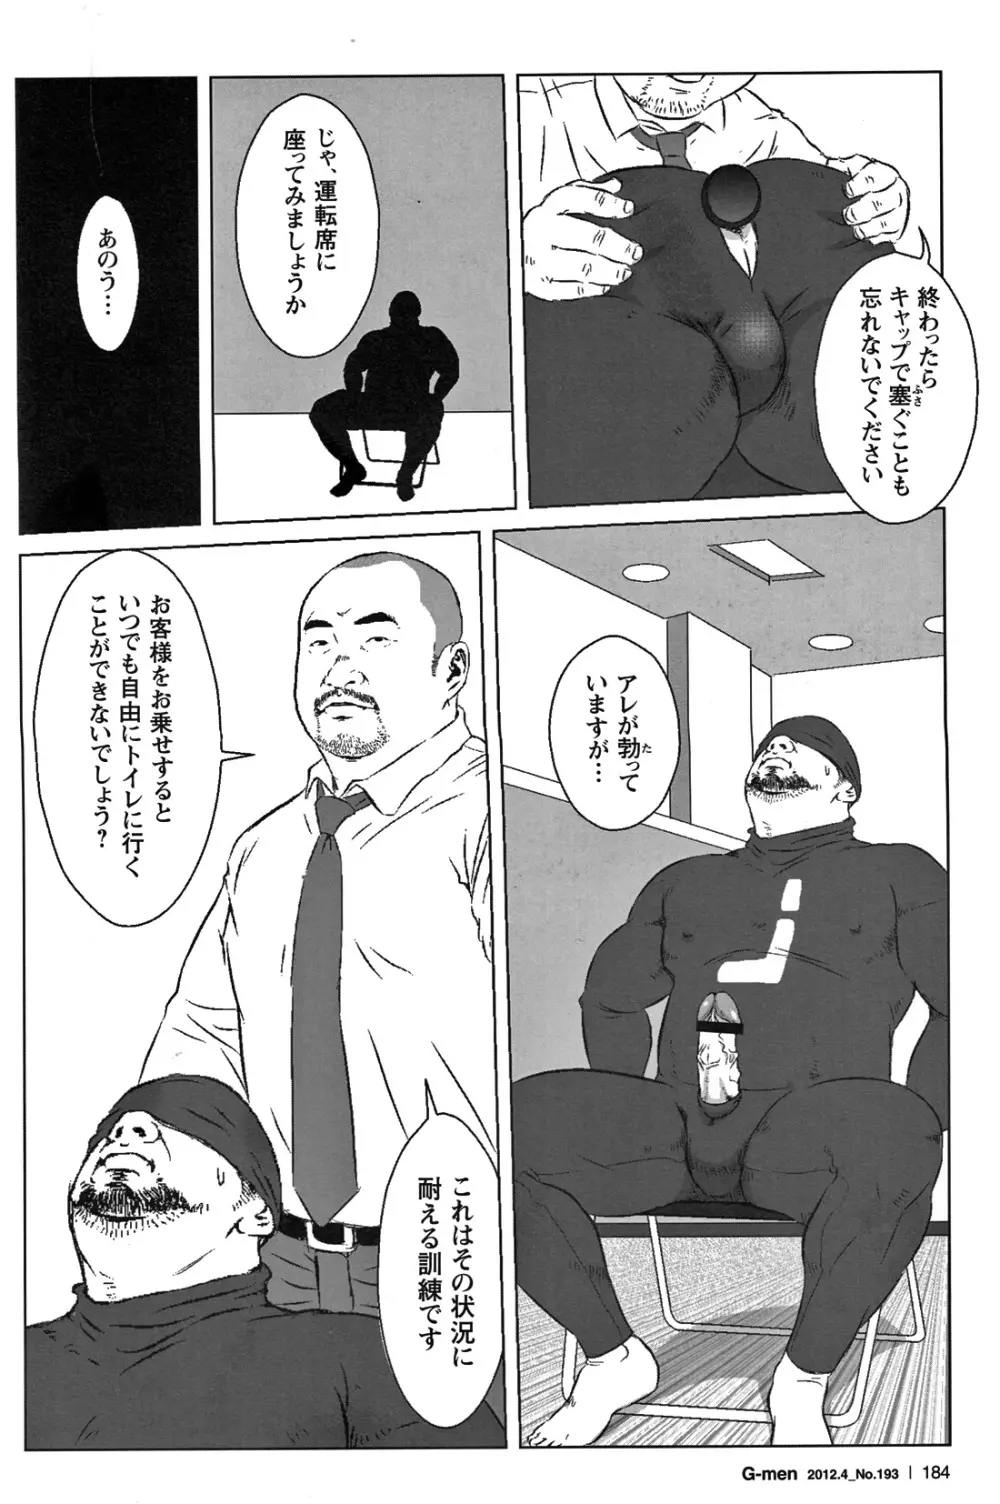 Comic G-men Gaho No.05 170ページ